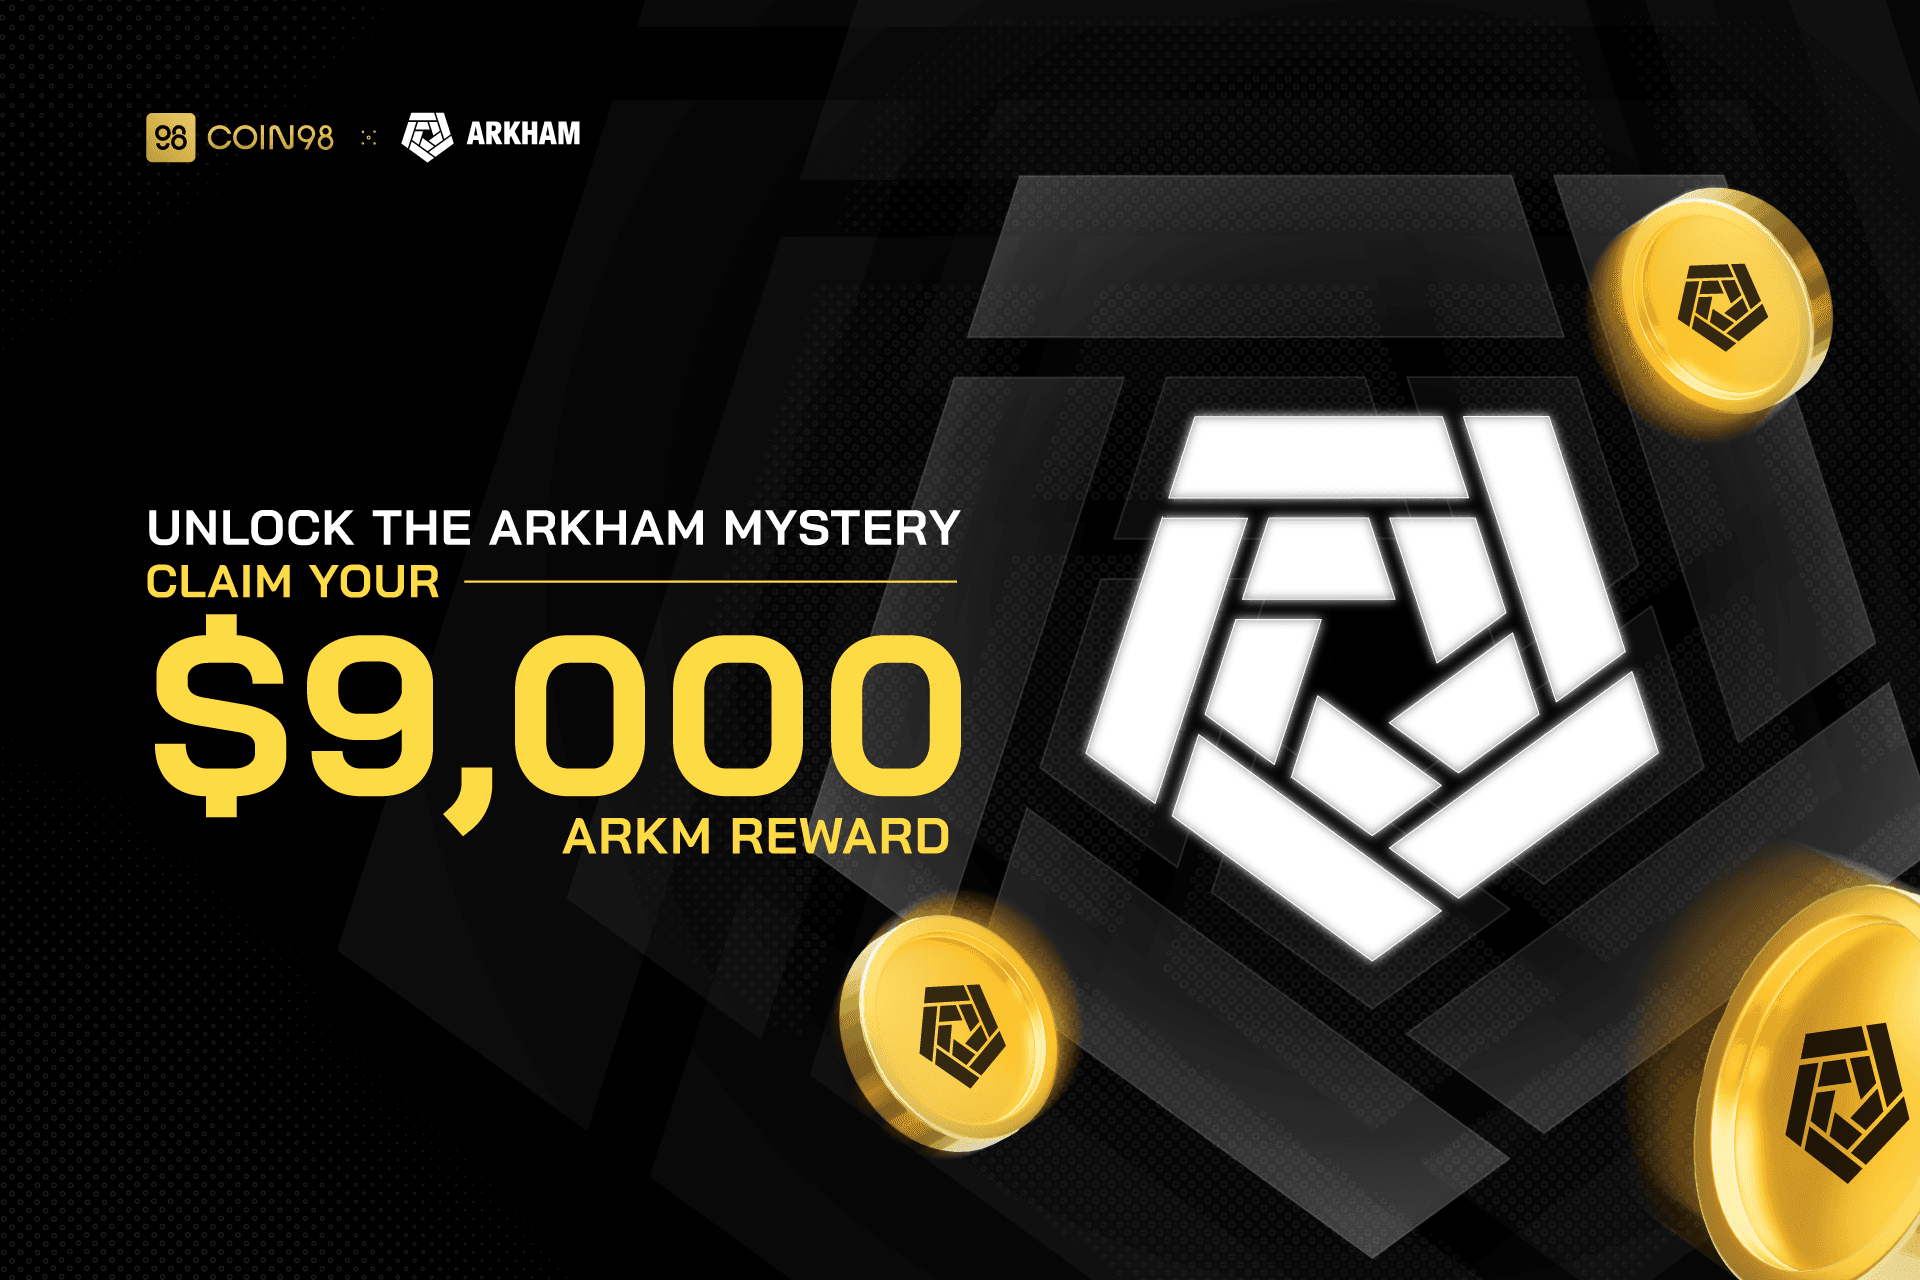 Giải mã bí ẩn ARKHAM cùng Coin98, rinh ngay $9.000 ARKM!